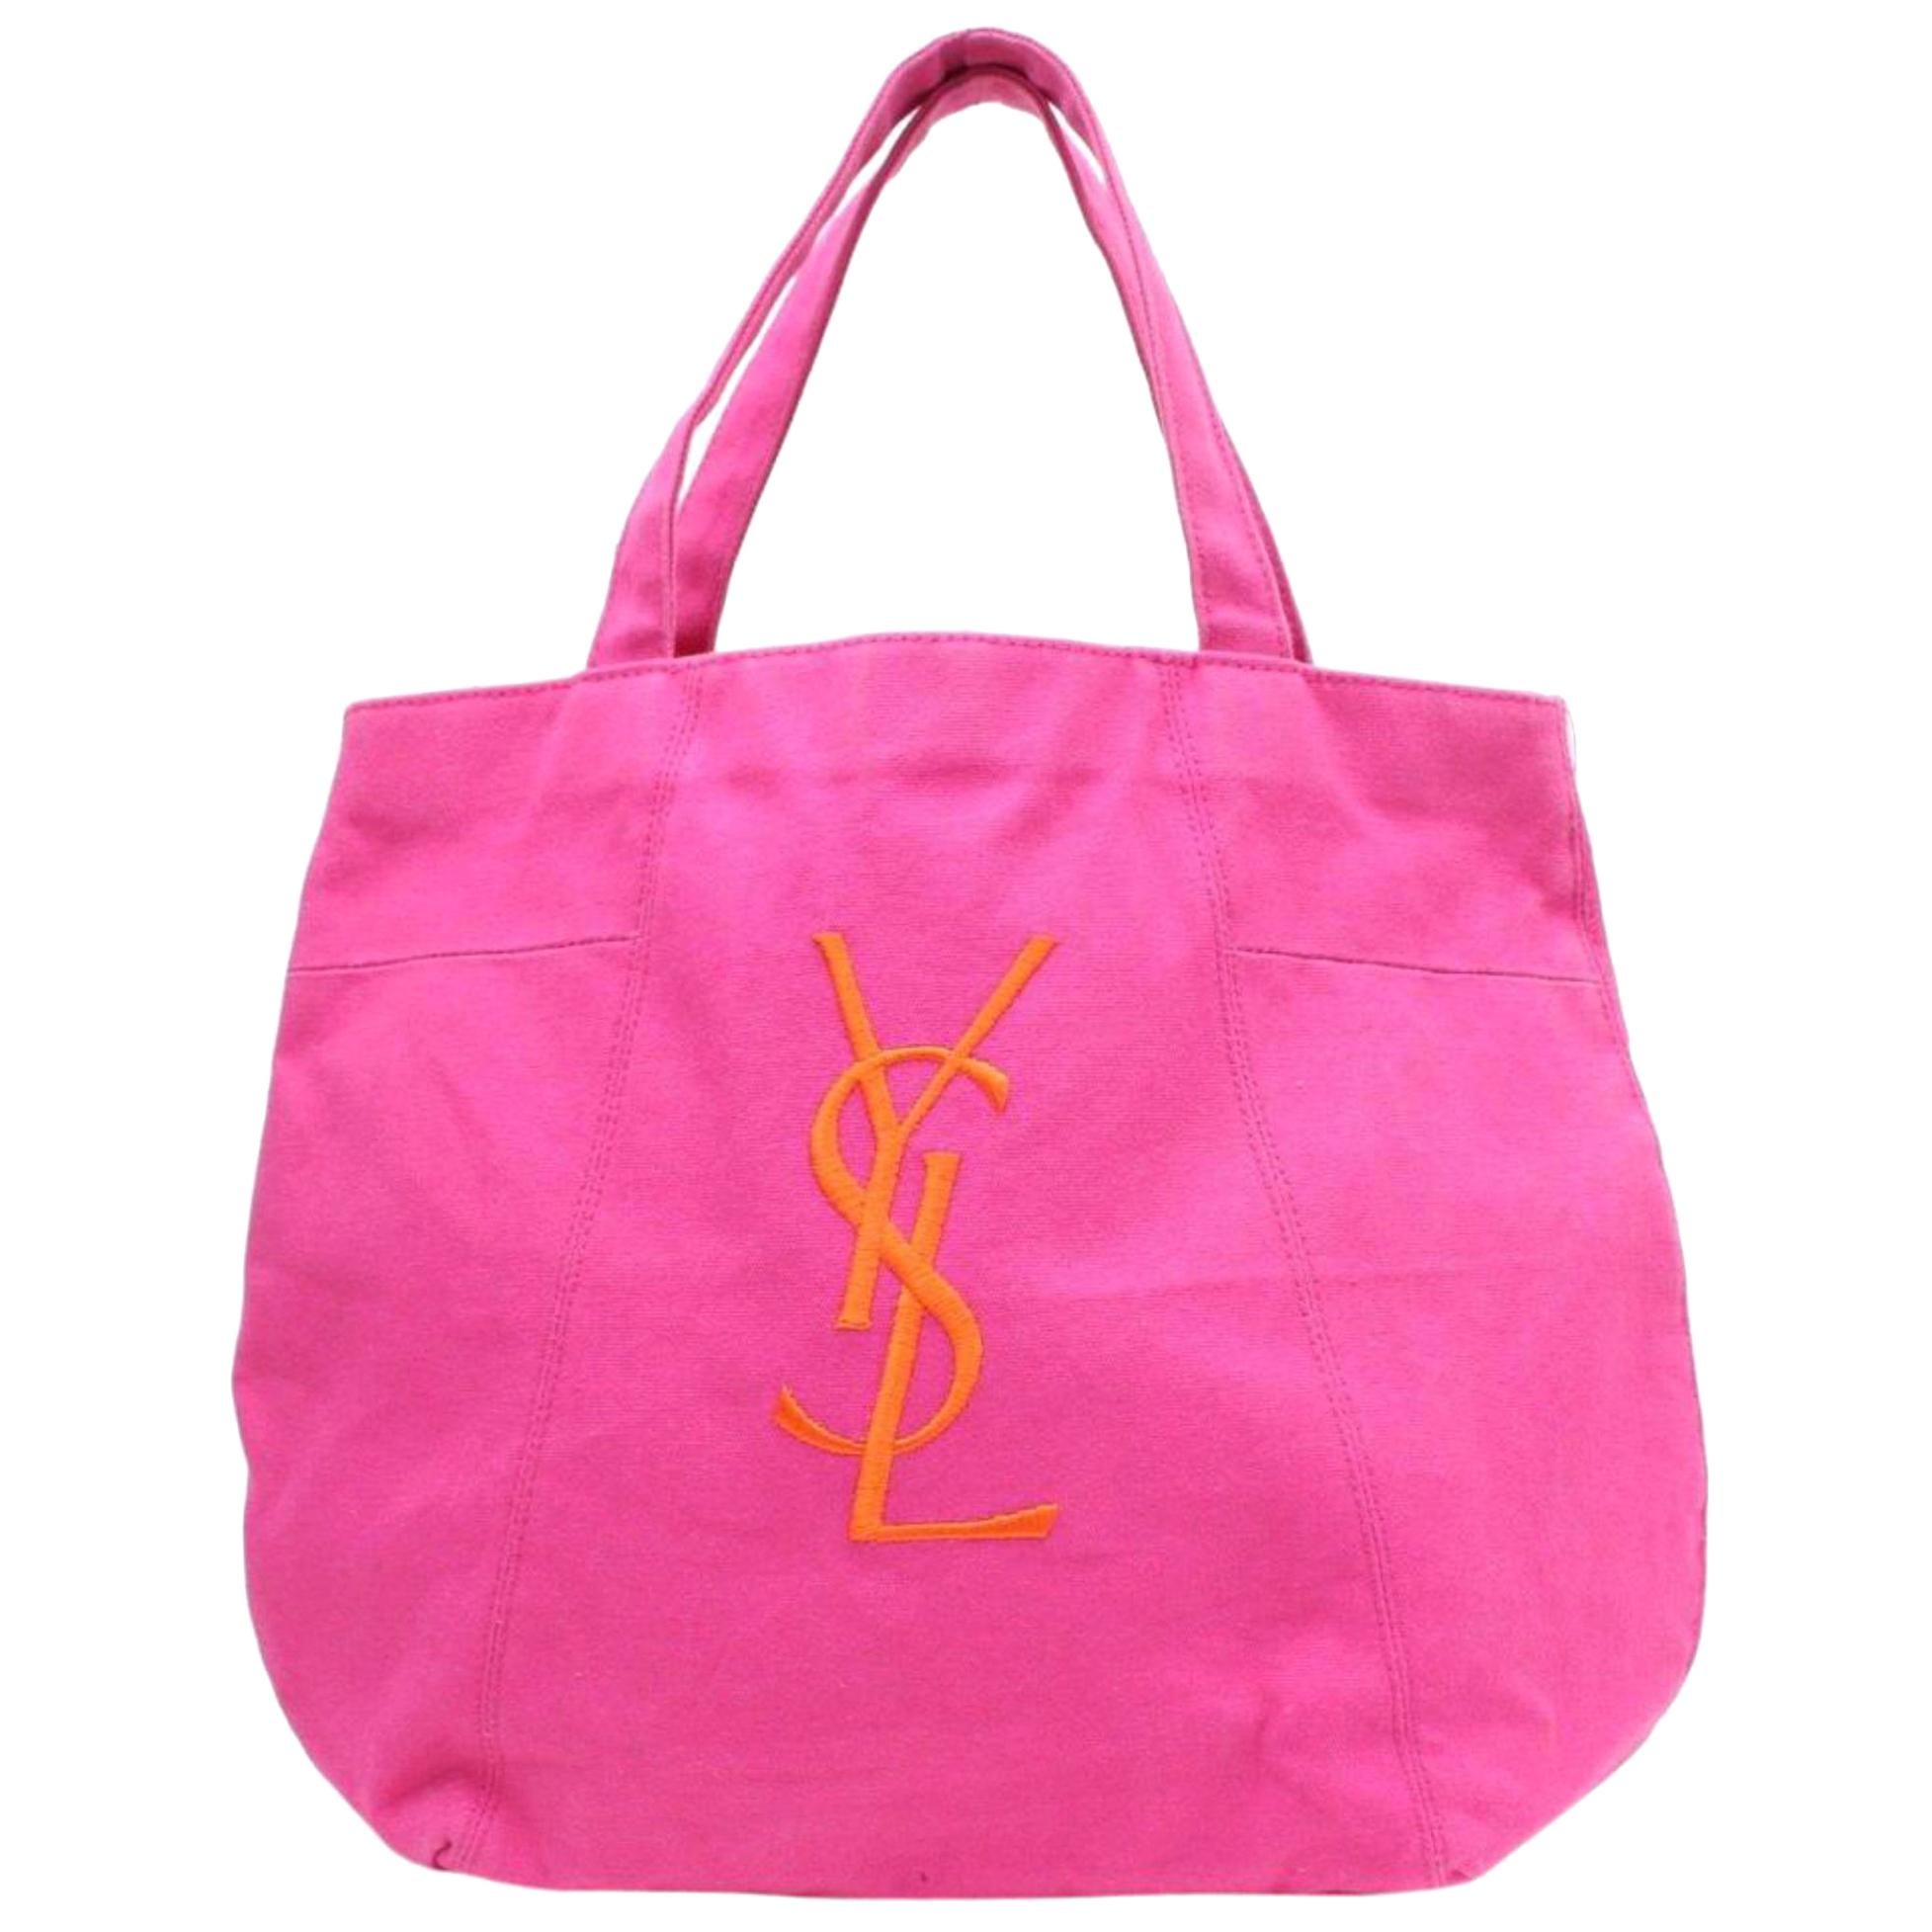 Saint Laurent Shopping Bag Parfums Edition Shopper 869749 Pink Canvas Tote For Sale